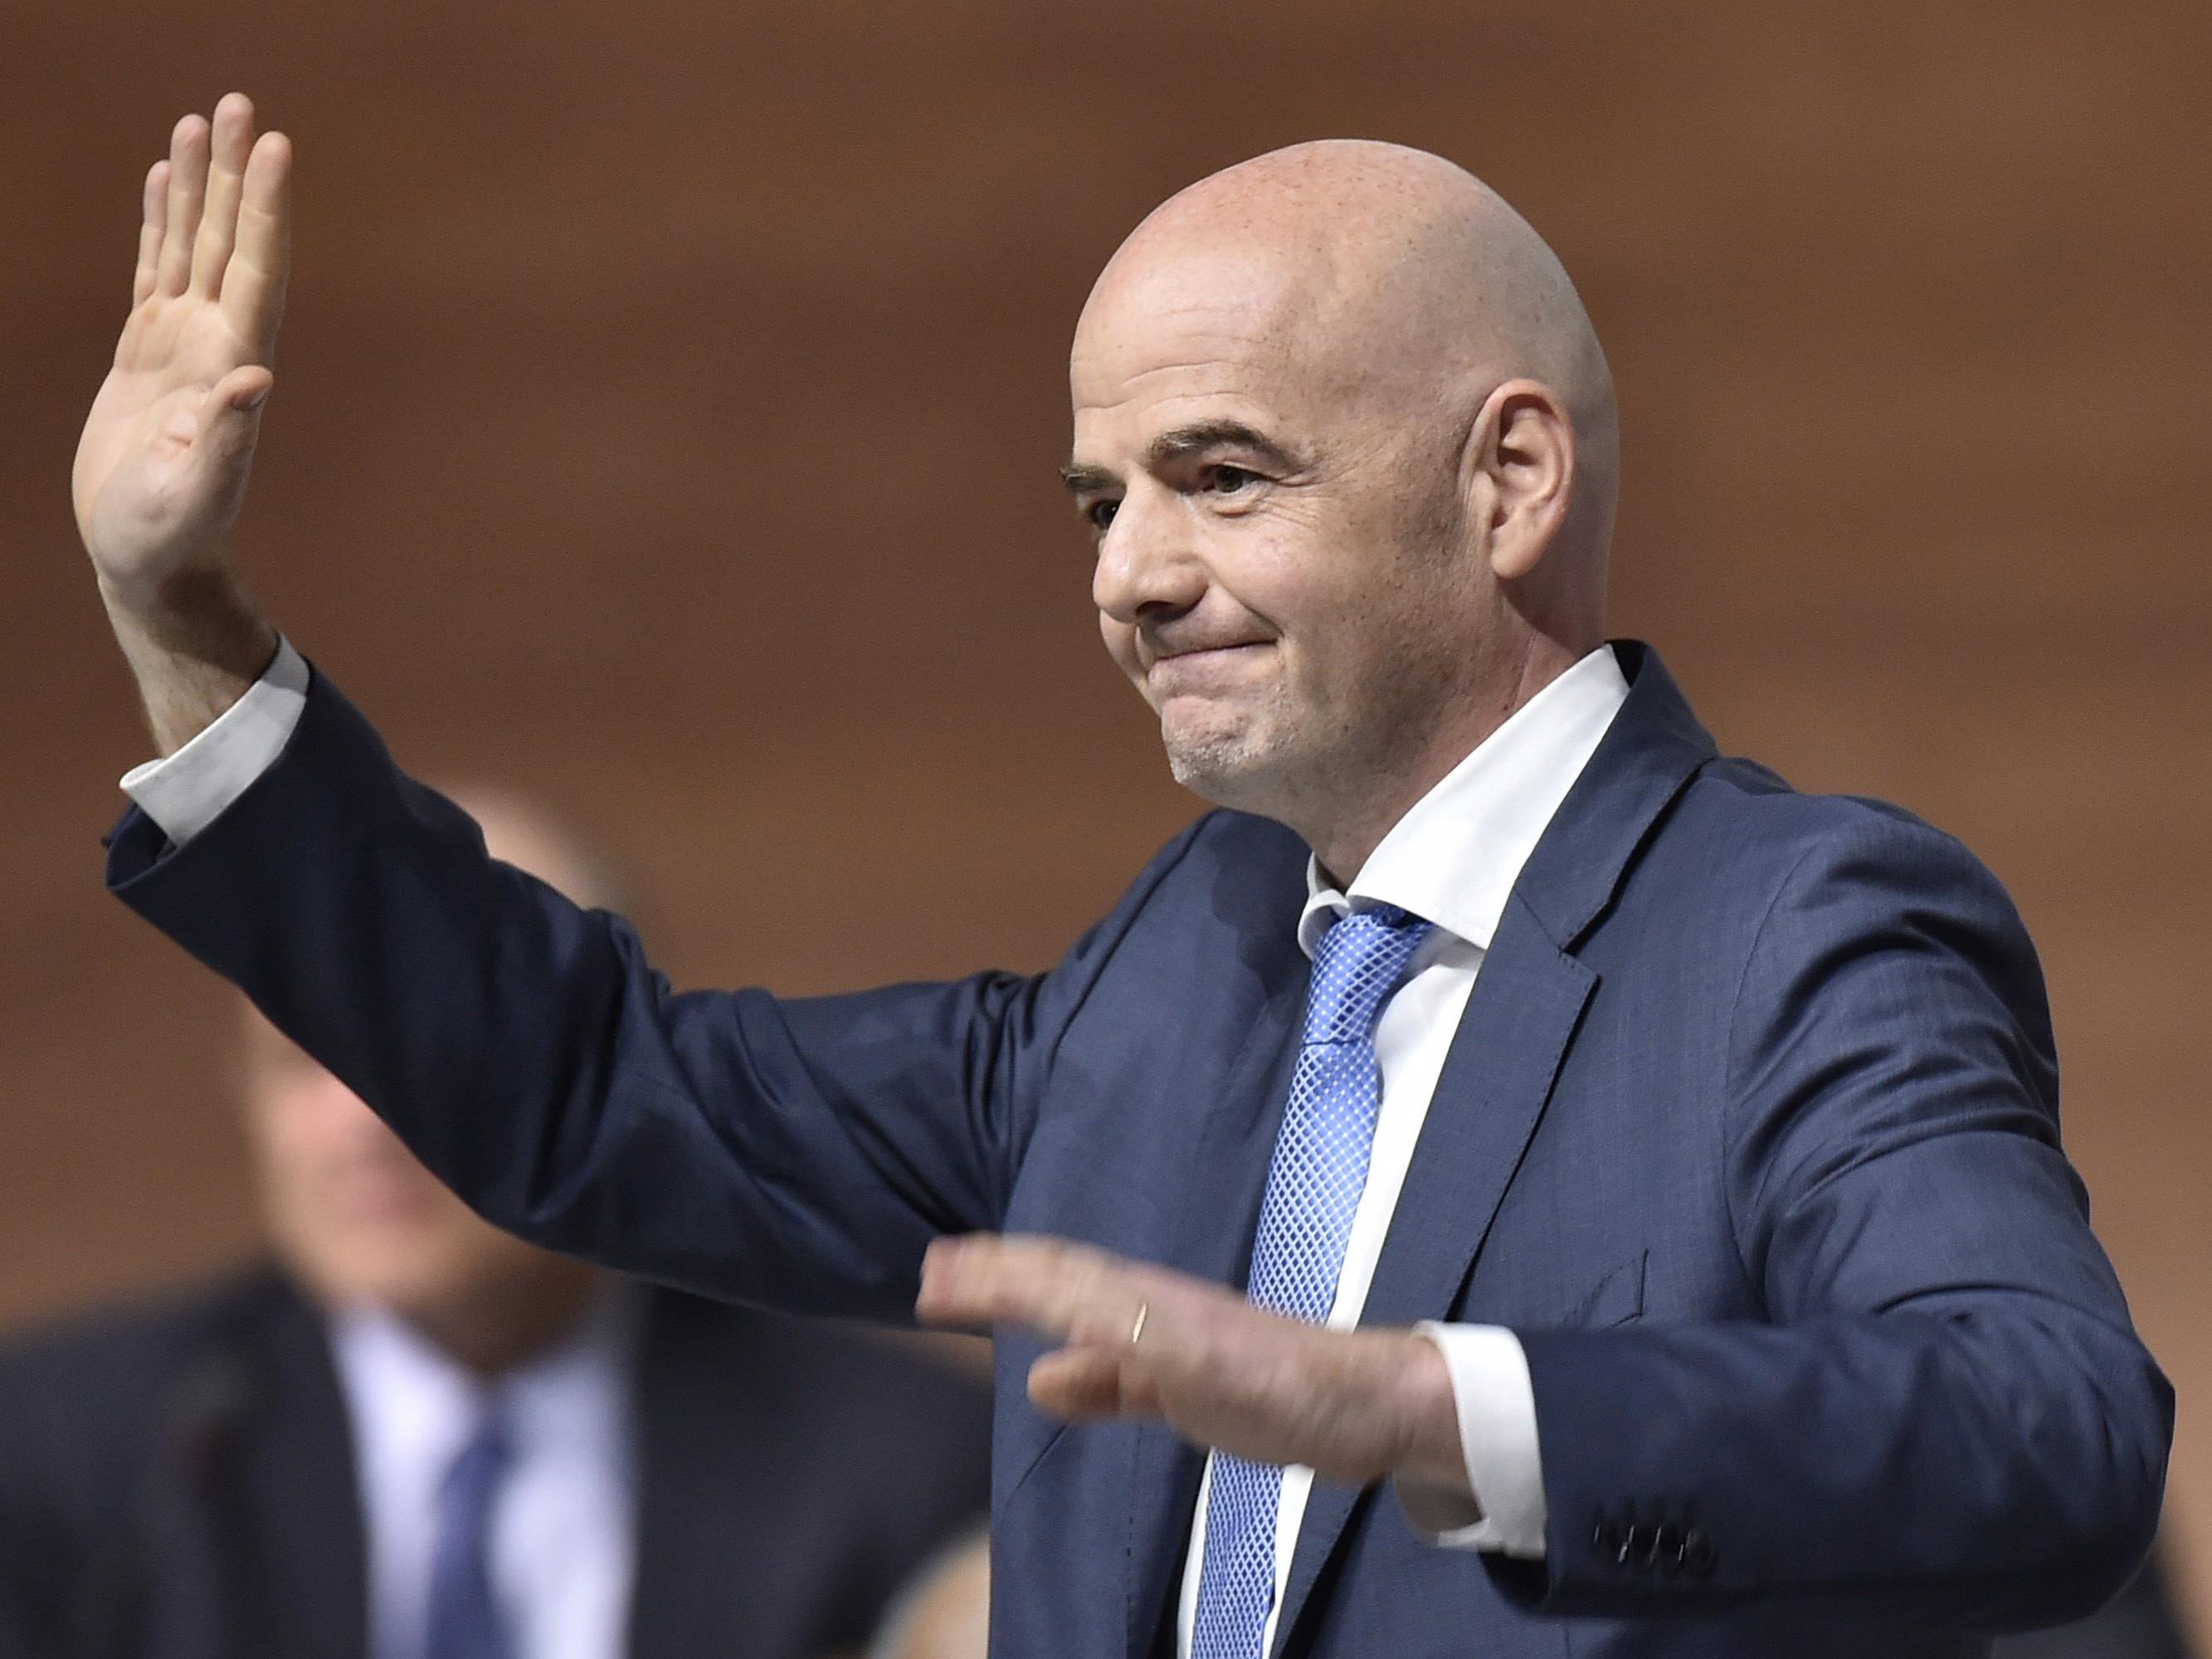 Der Schweizer Gianni Infantino ist Sepp Blatters Nachfolger als neuer FIFA-Präsident.